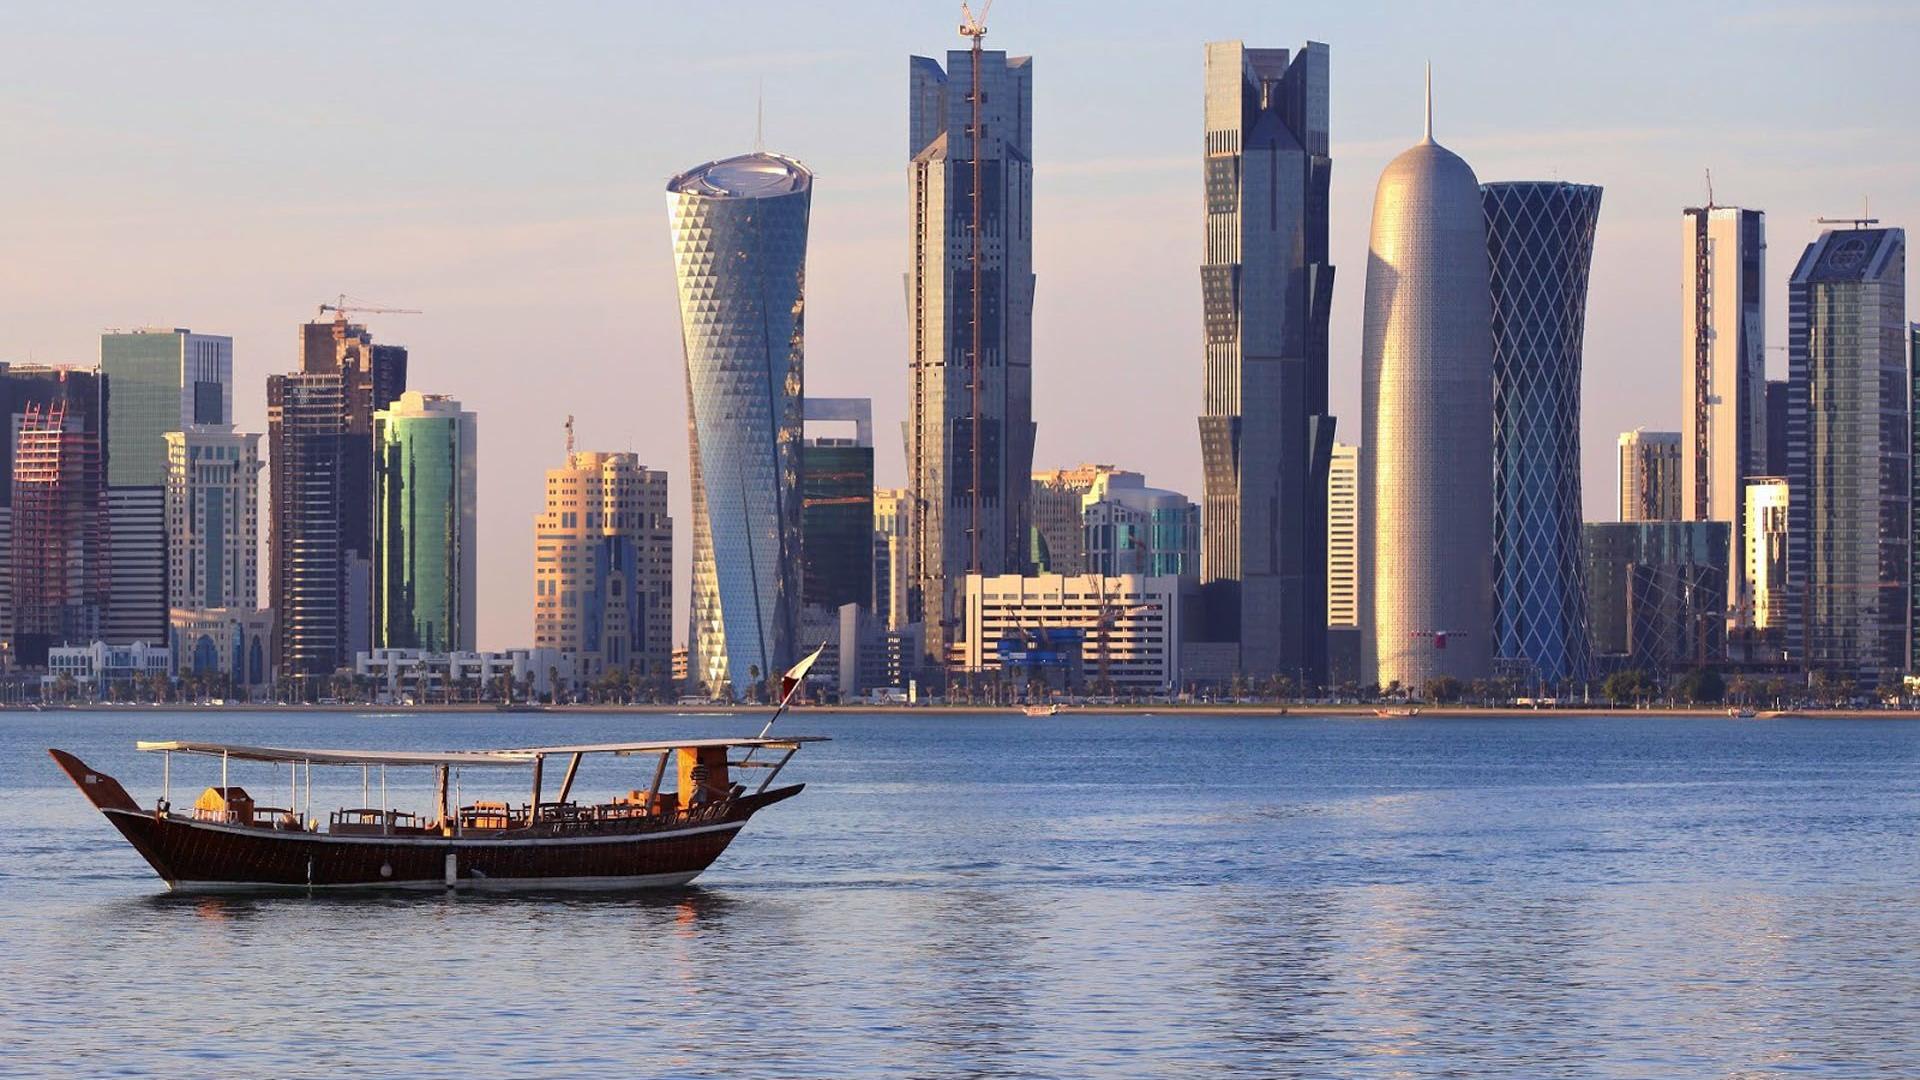 Sự tươi mới và thu hút của hình nền Qatar sẽ khiến bạn vô cùng thích thú. Với những đường nét tinh tế, những màu sắc sinh động và đầy cảm hứng, chắc chắn bạn sẽ tìm thấy một bức tranh đẹp về đất nước này. Hãy tìm hiểu và đắm chìm trong vẻ đẹp tự hào của Qatar qua hình nền độc đáo này.